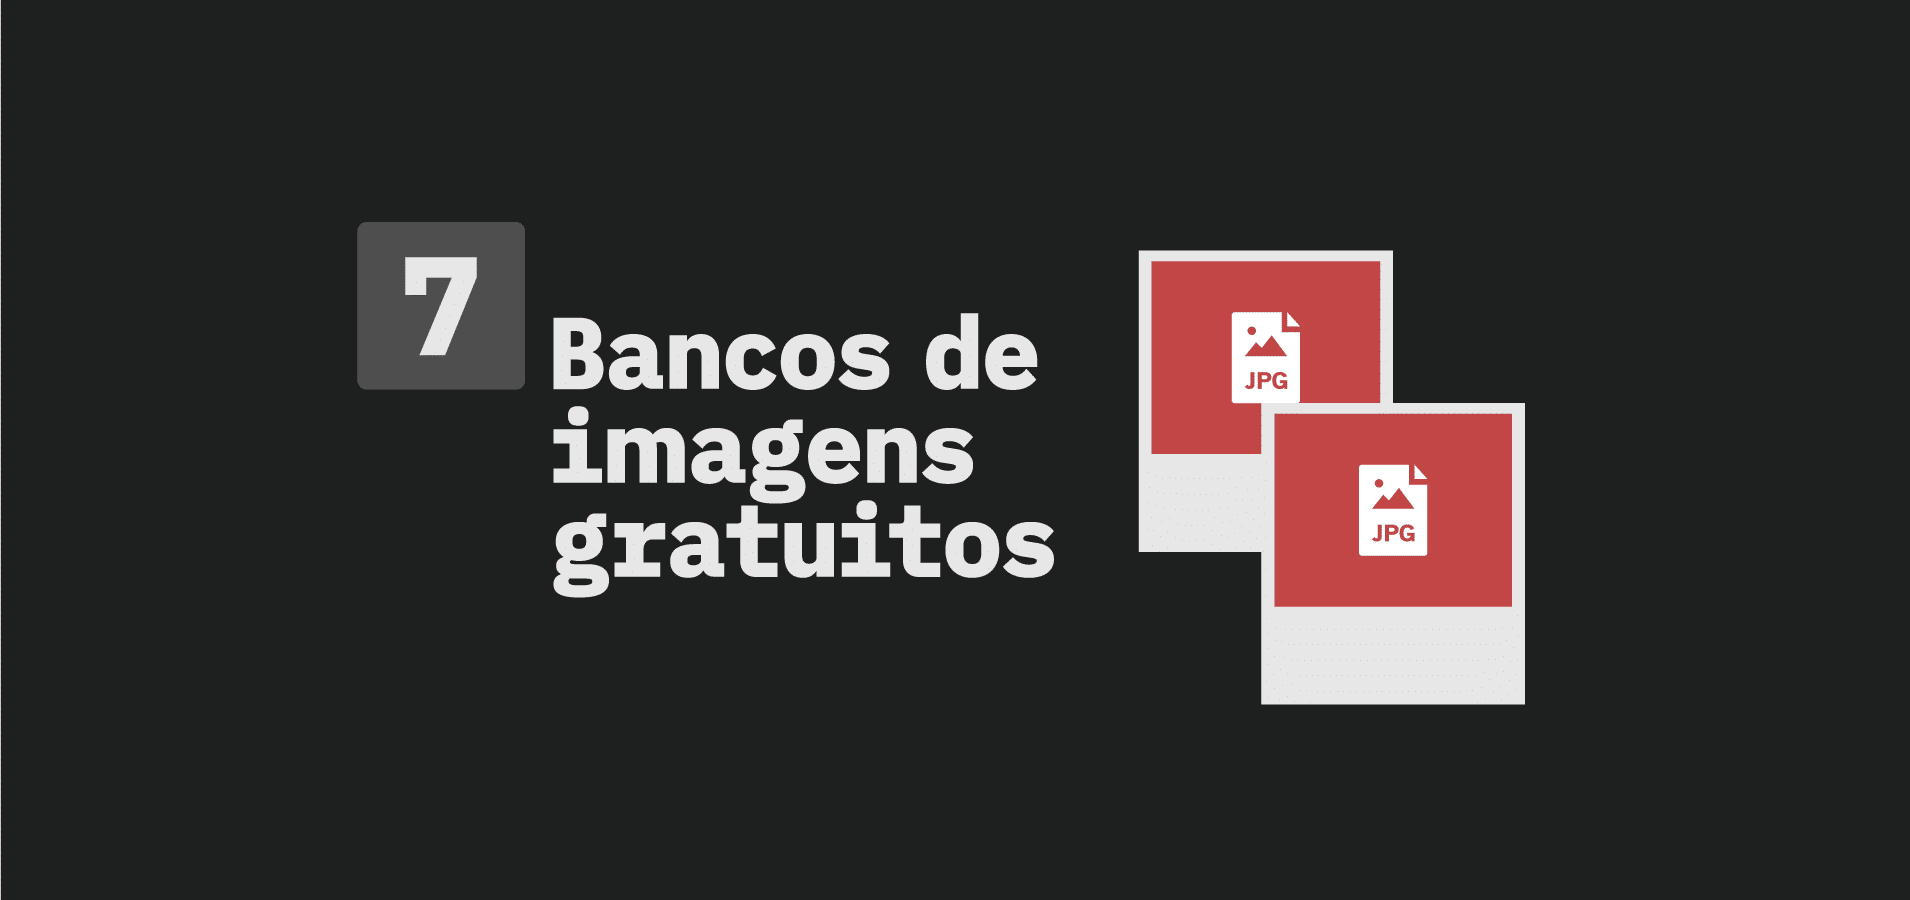 Criar Imagem - Banco de Imagens